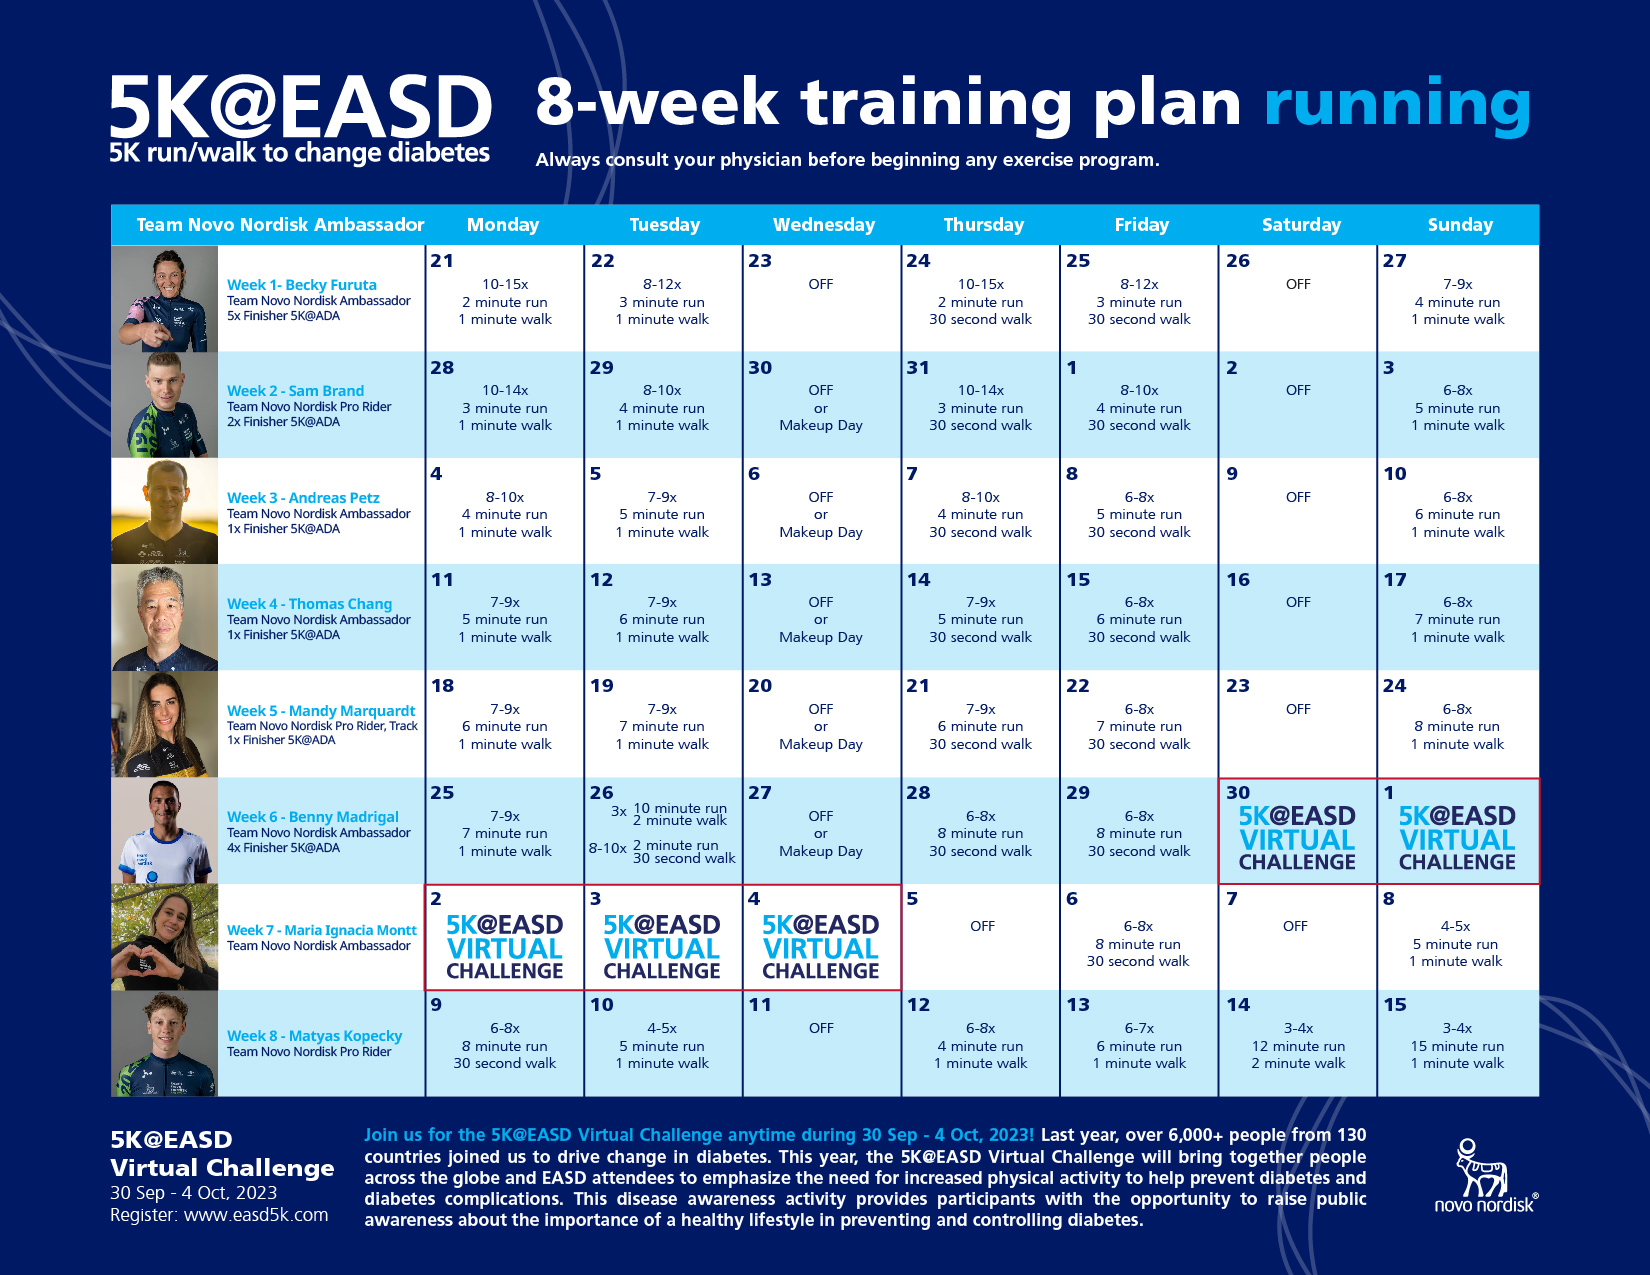 5K@EASD Training Plans